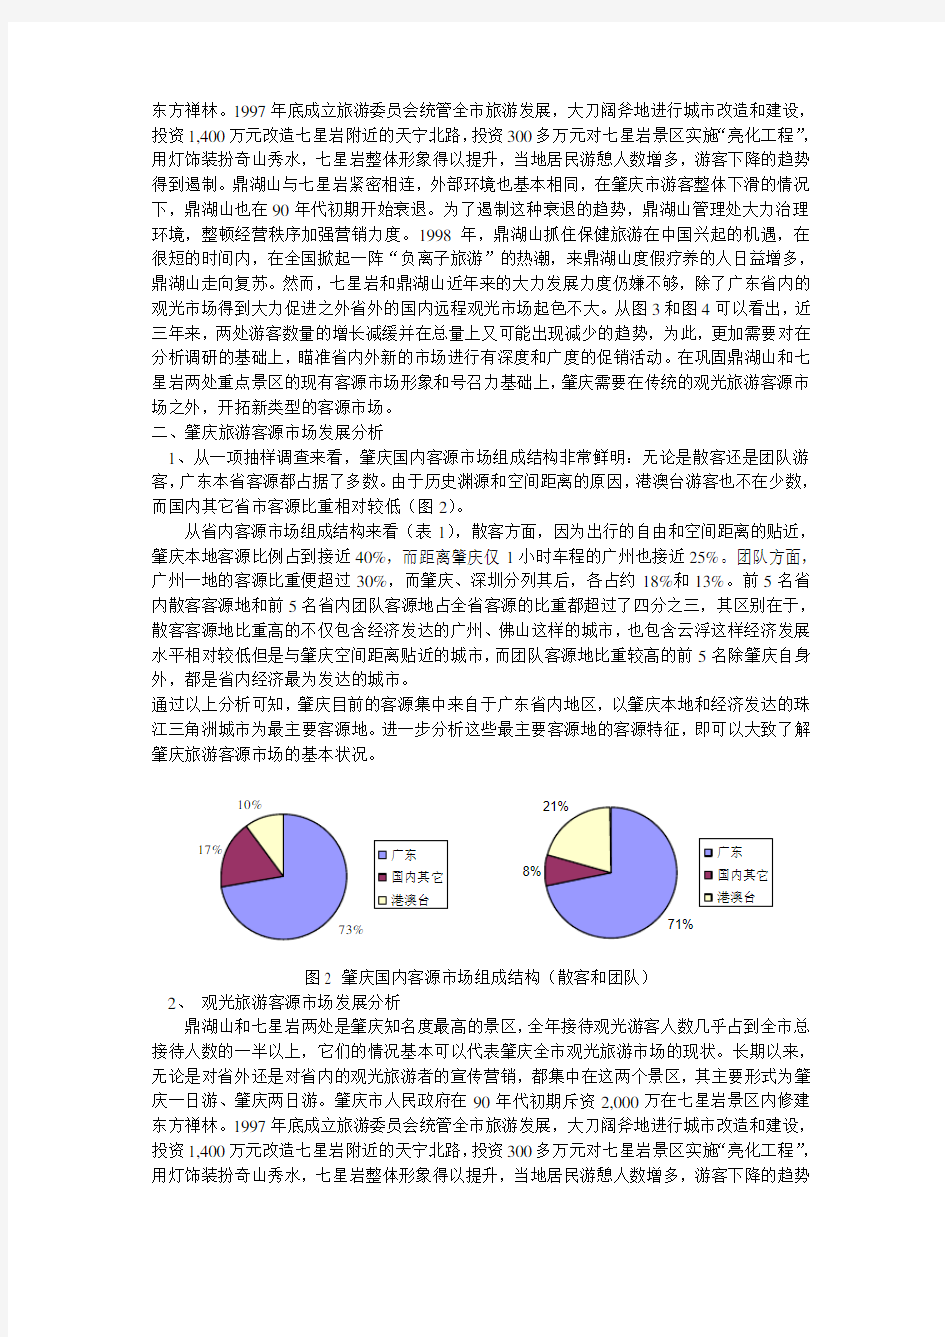 肇庆市旅游市场调查分析及其旅游产品设计